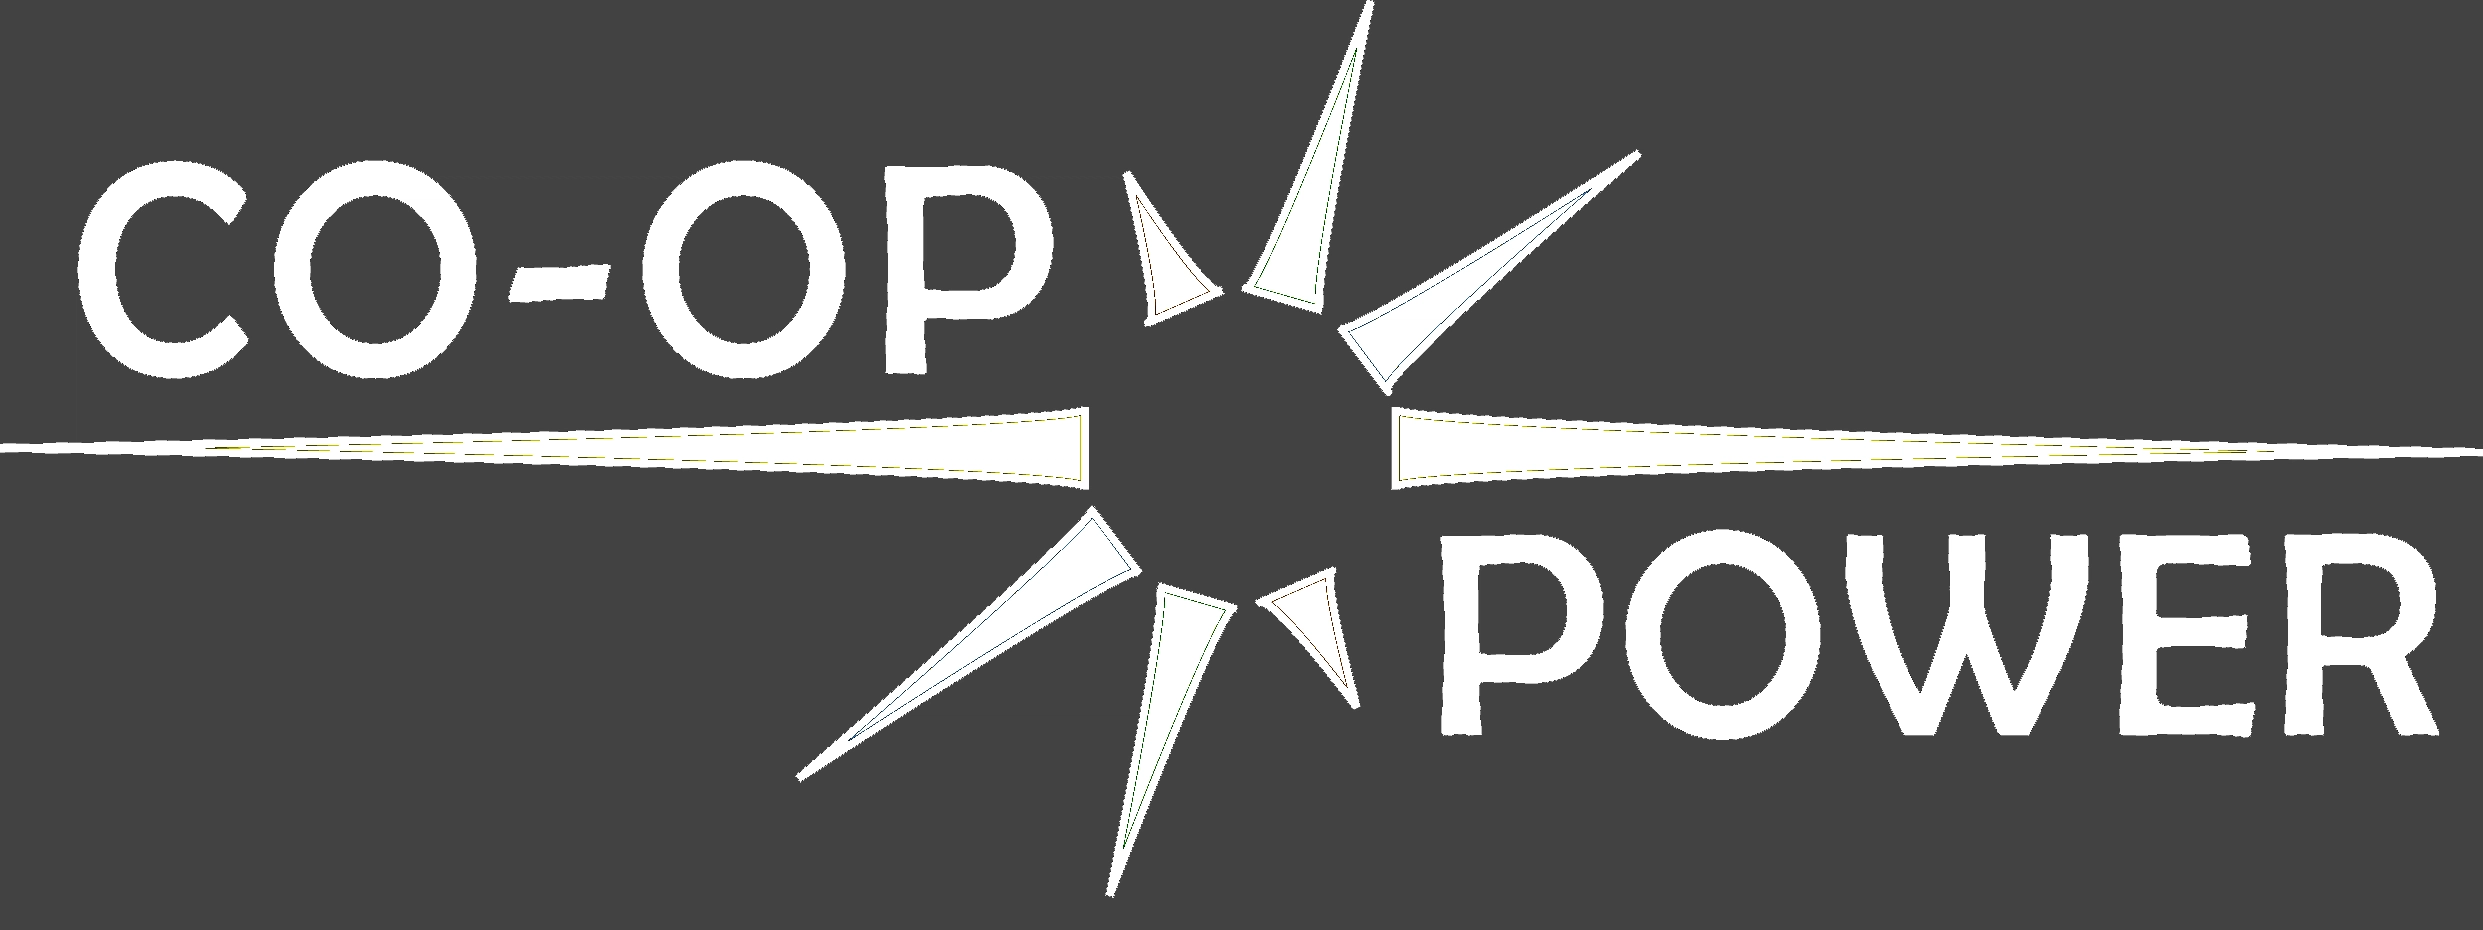 Co-op Power Logo